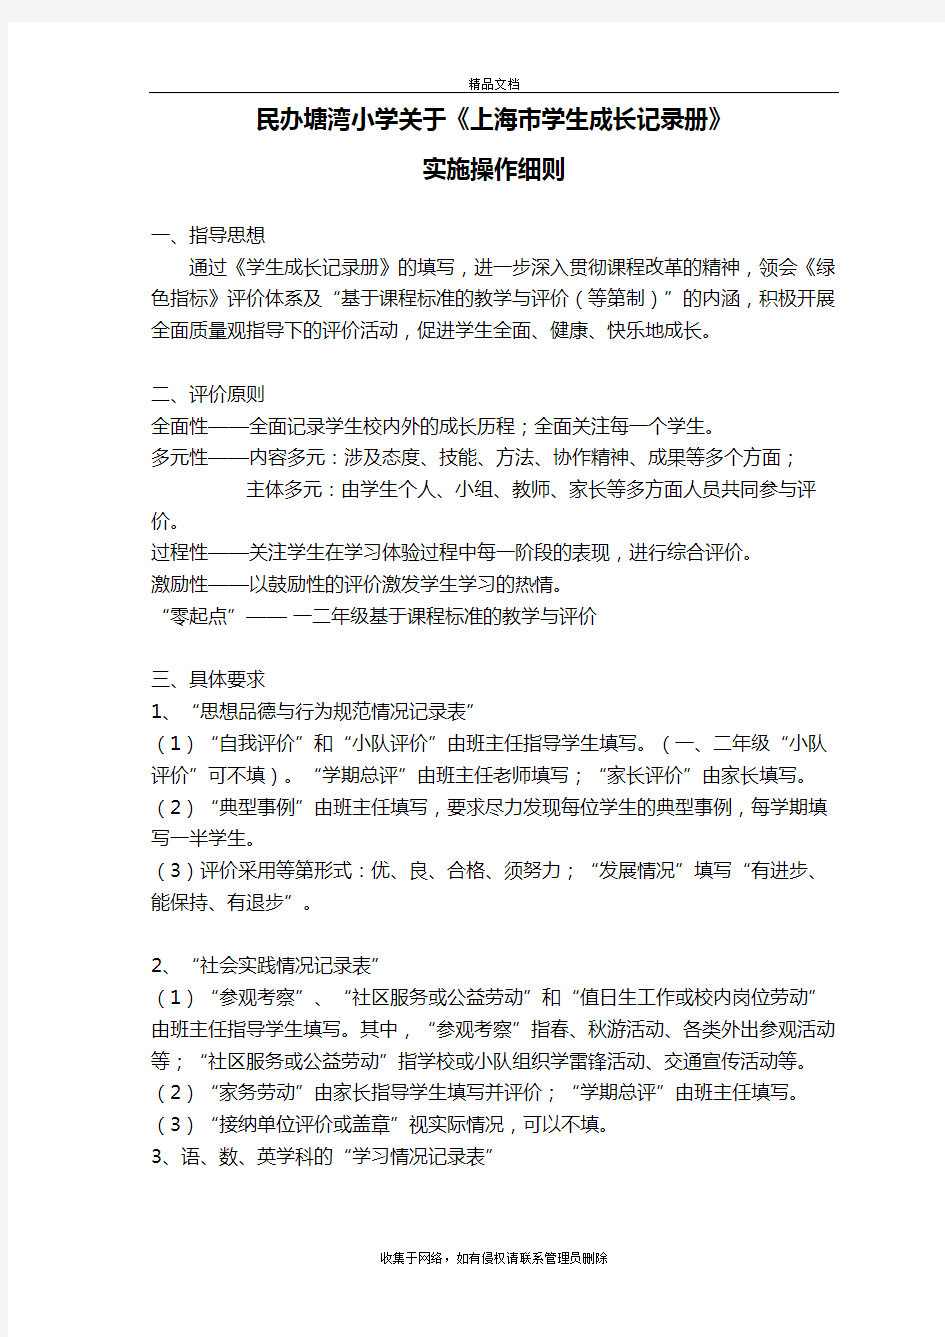 上海市学生成长记录册填写细则知识分享